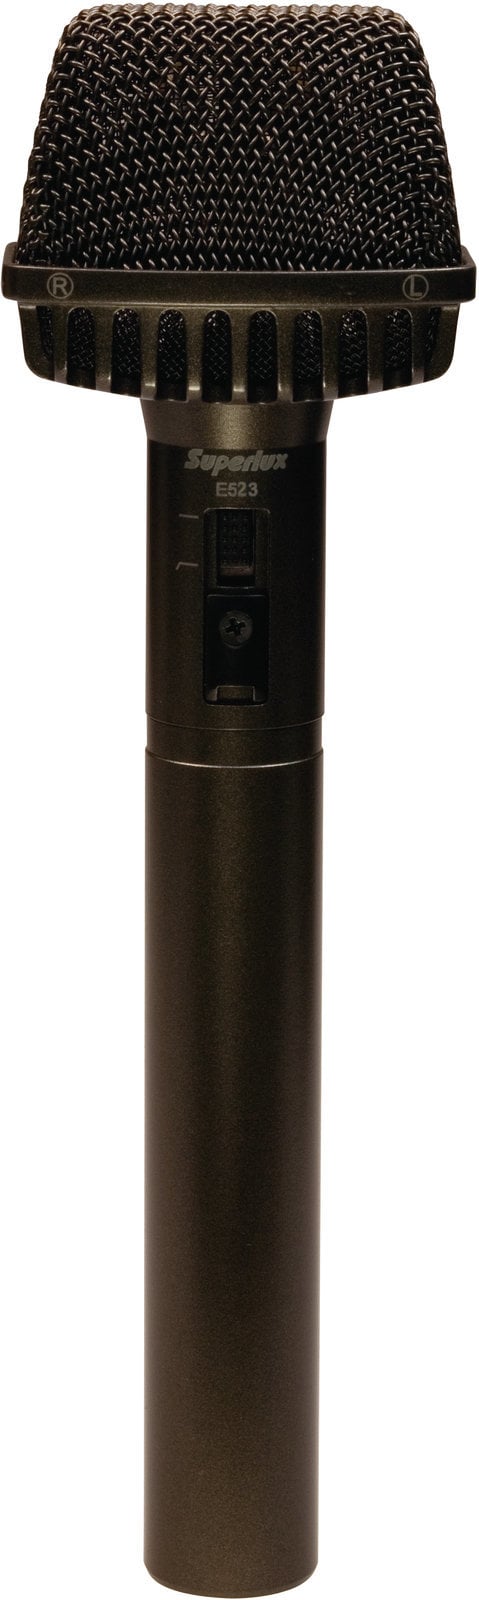 Mikrofon STEREO Superlux E523D